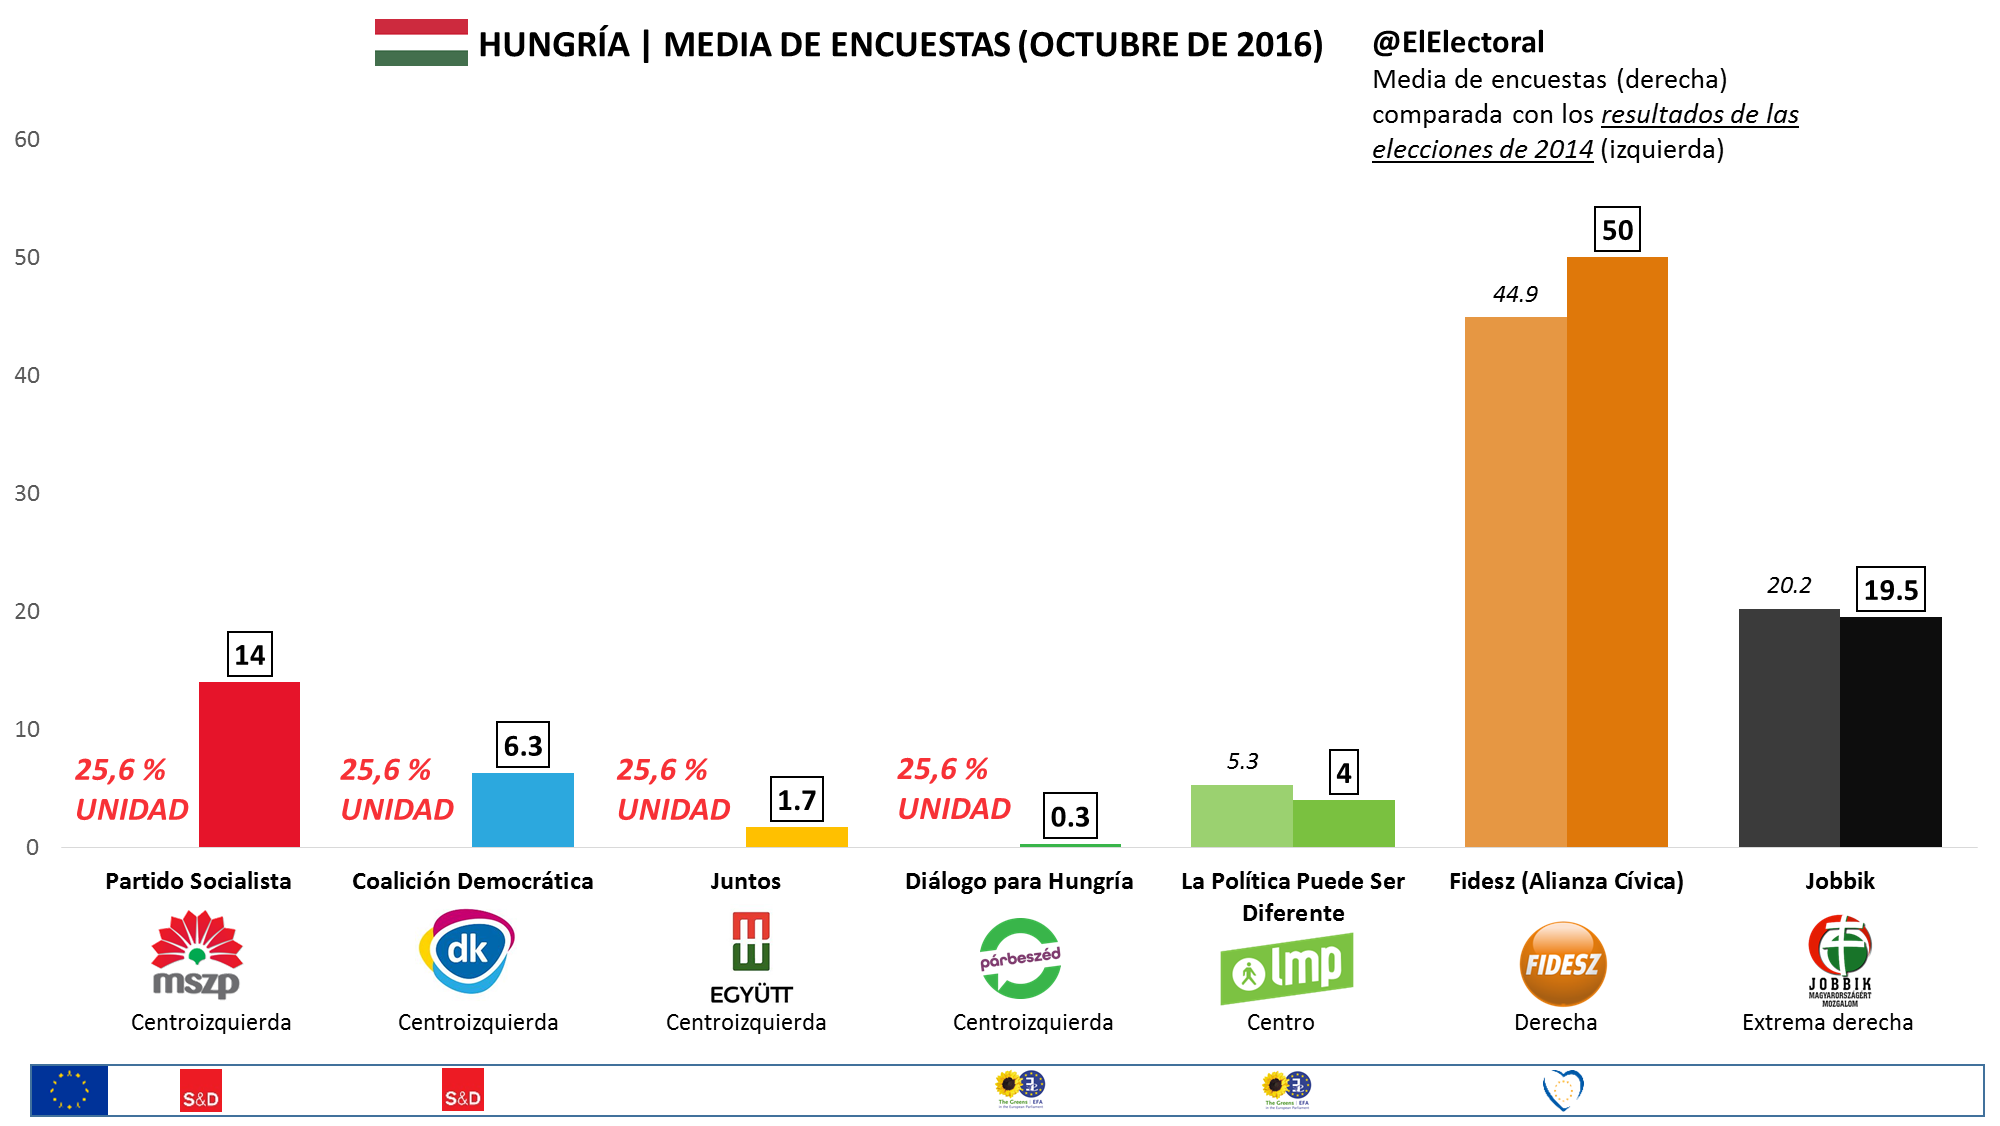 Media de encuestas Hungría